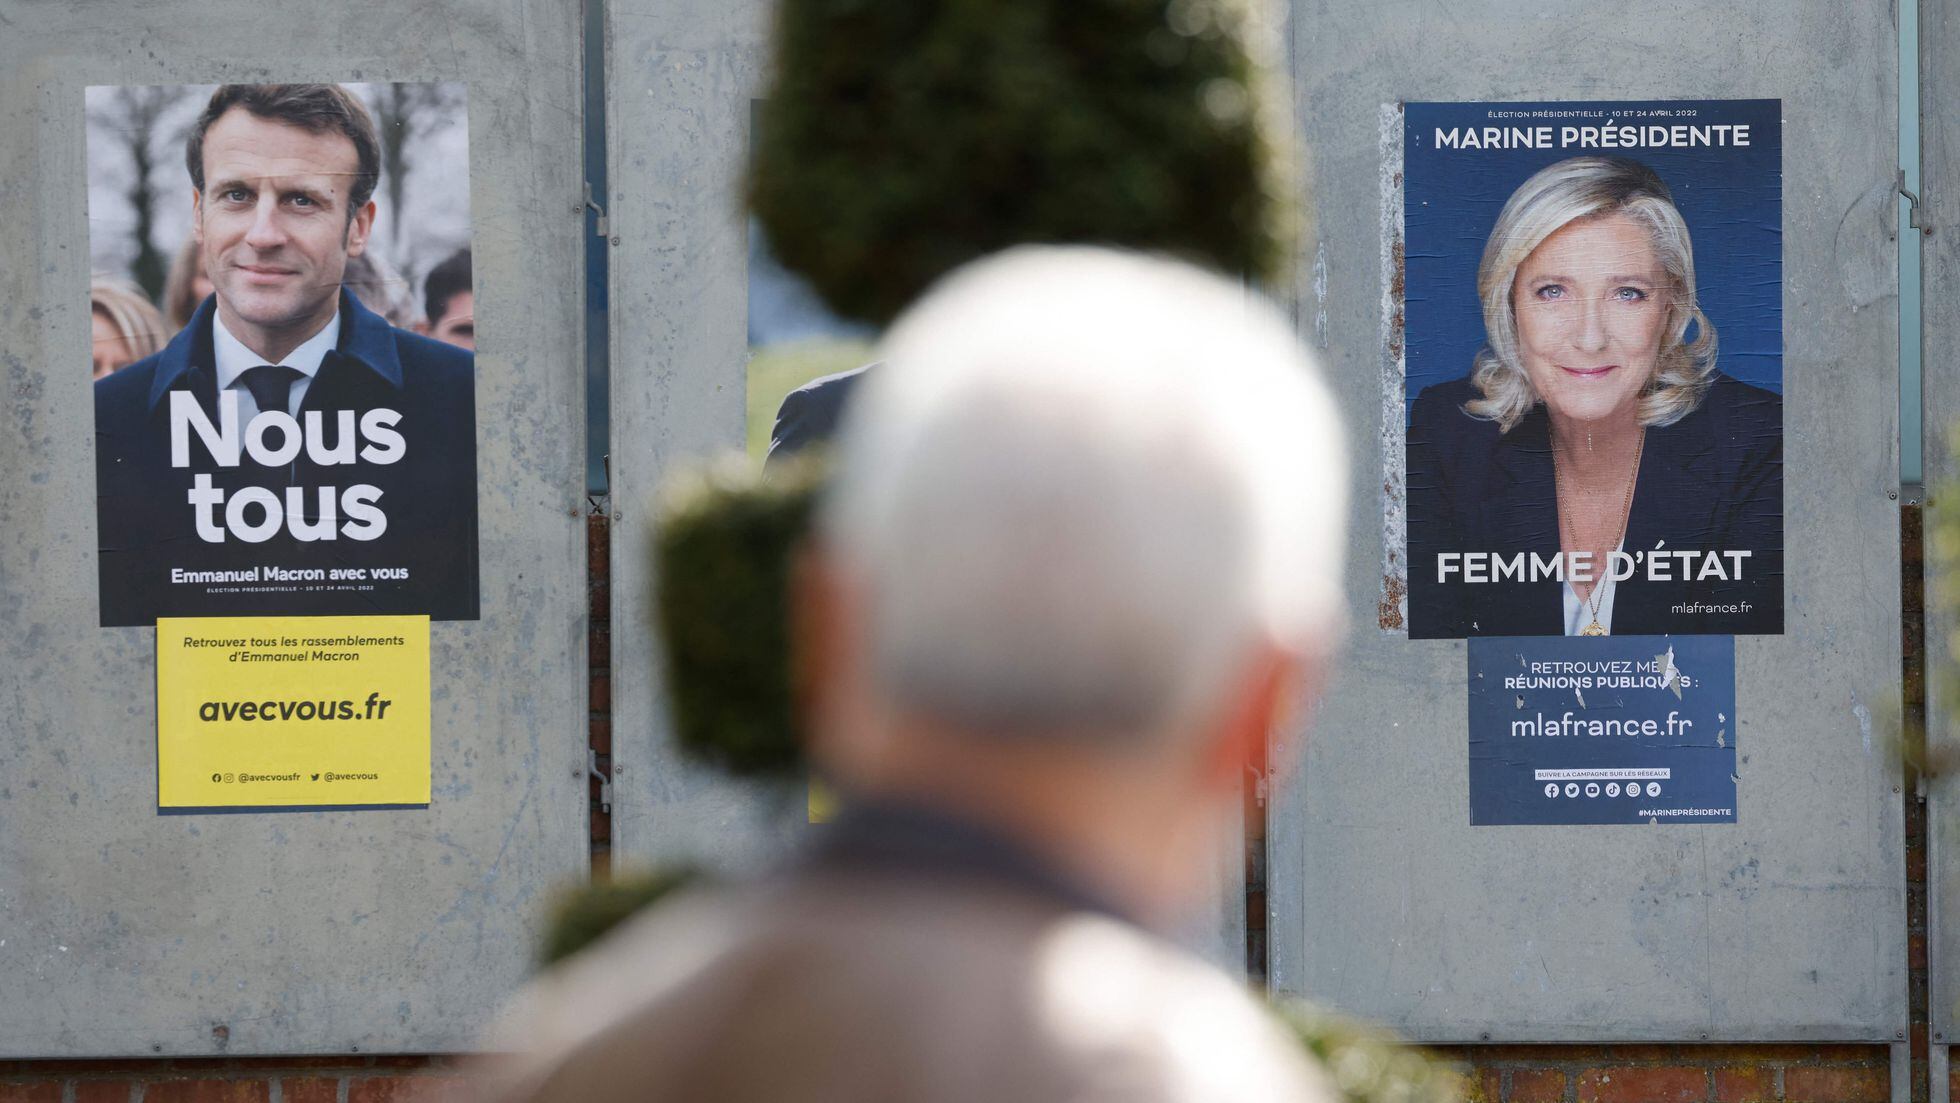 Elecciones en Francia: Emmanuel Macron gana, Marine Le Pen pierde | Opinión | EL PAÍS